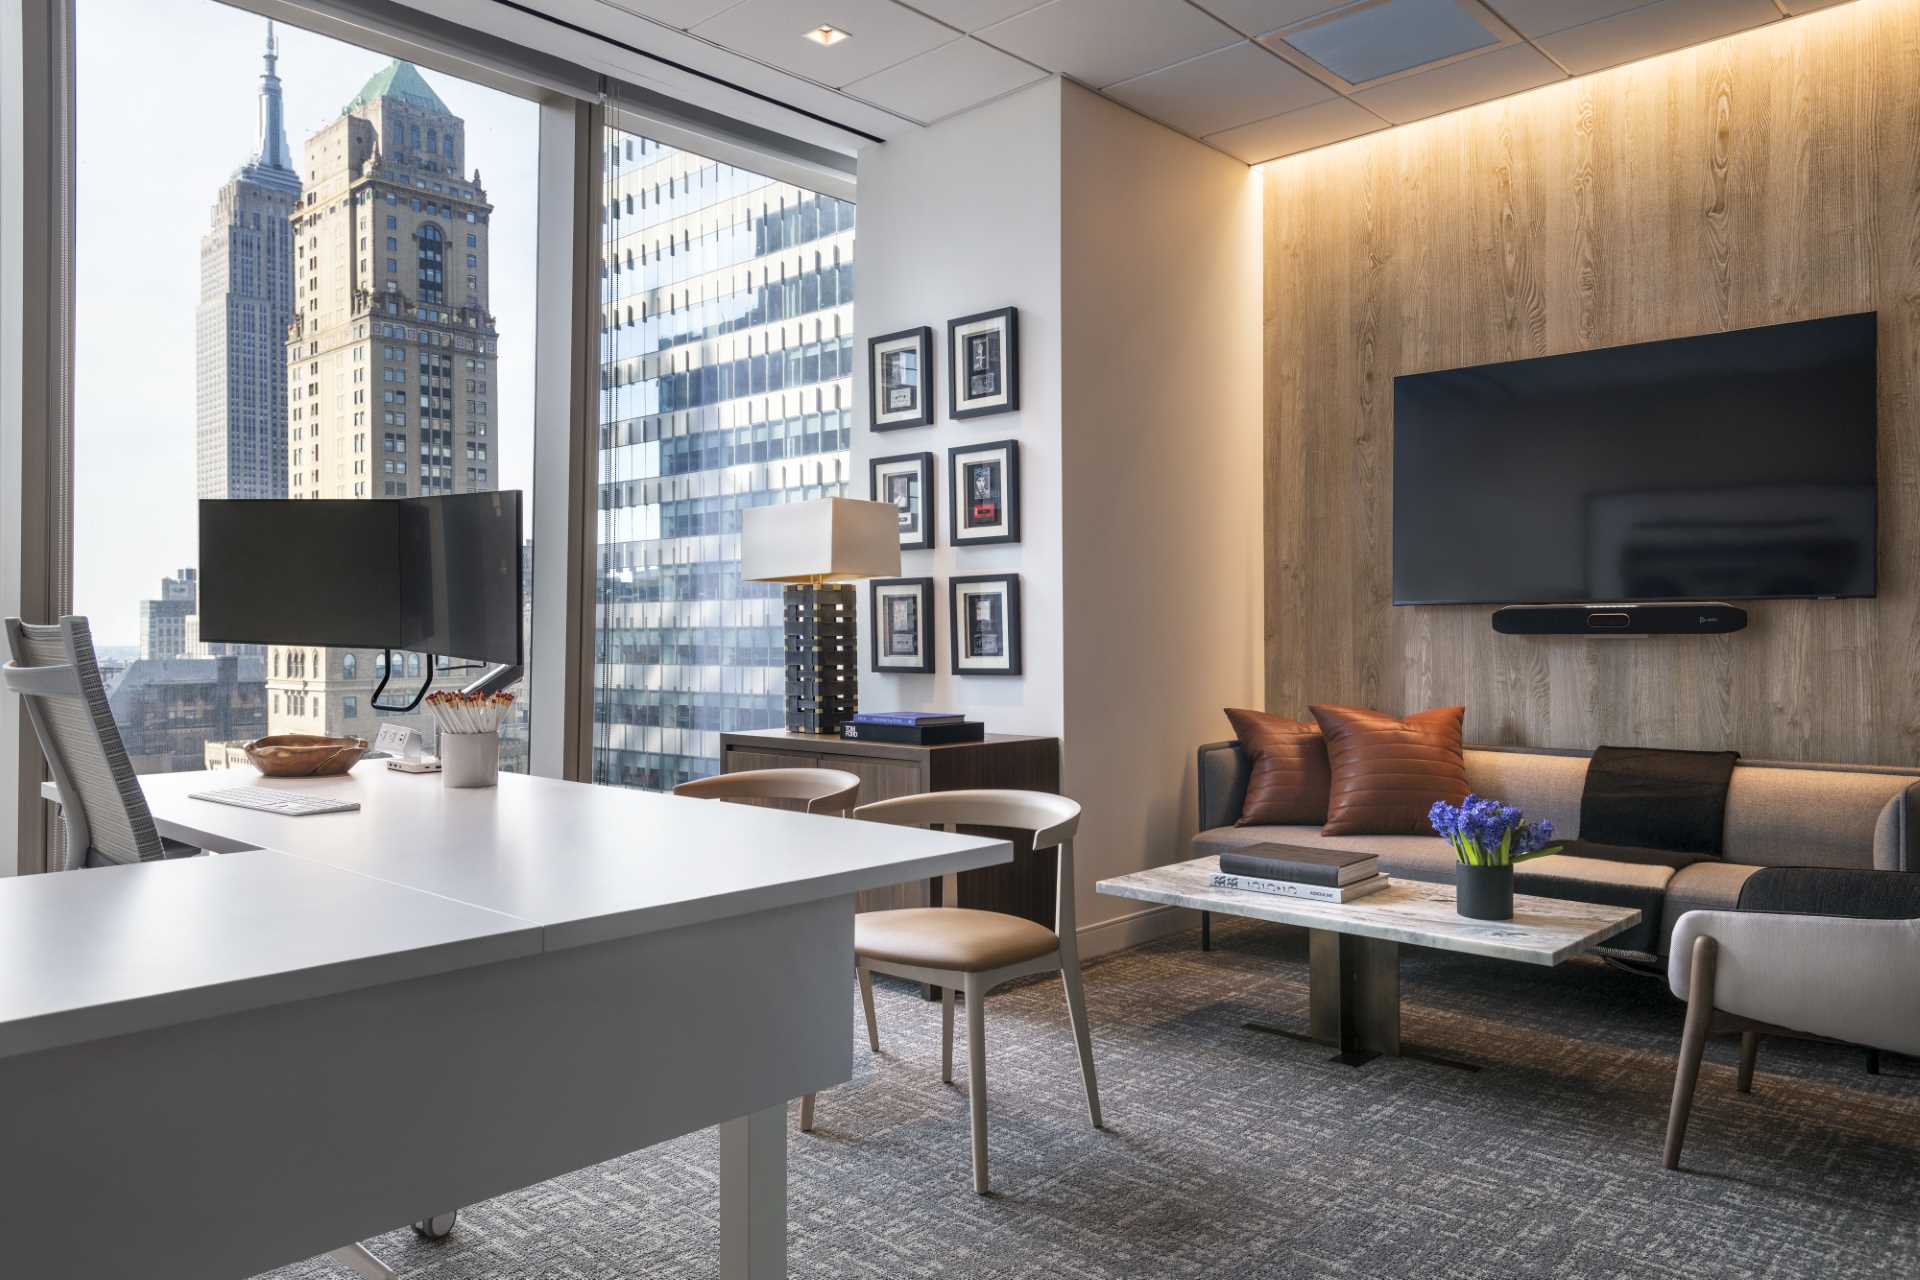 A modern office with hidden lighting.